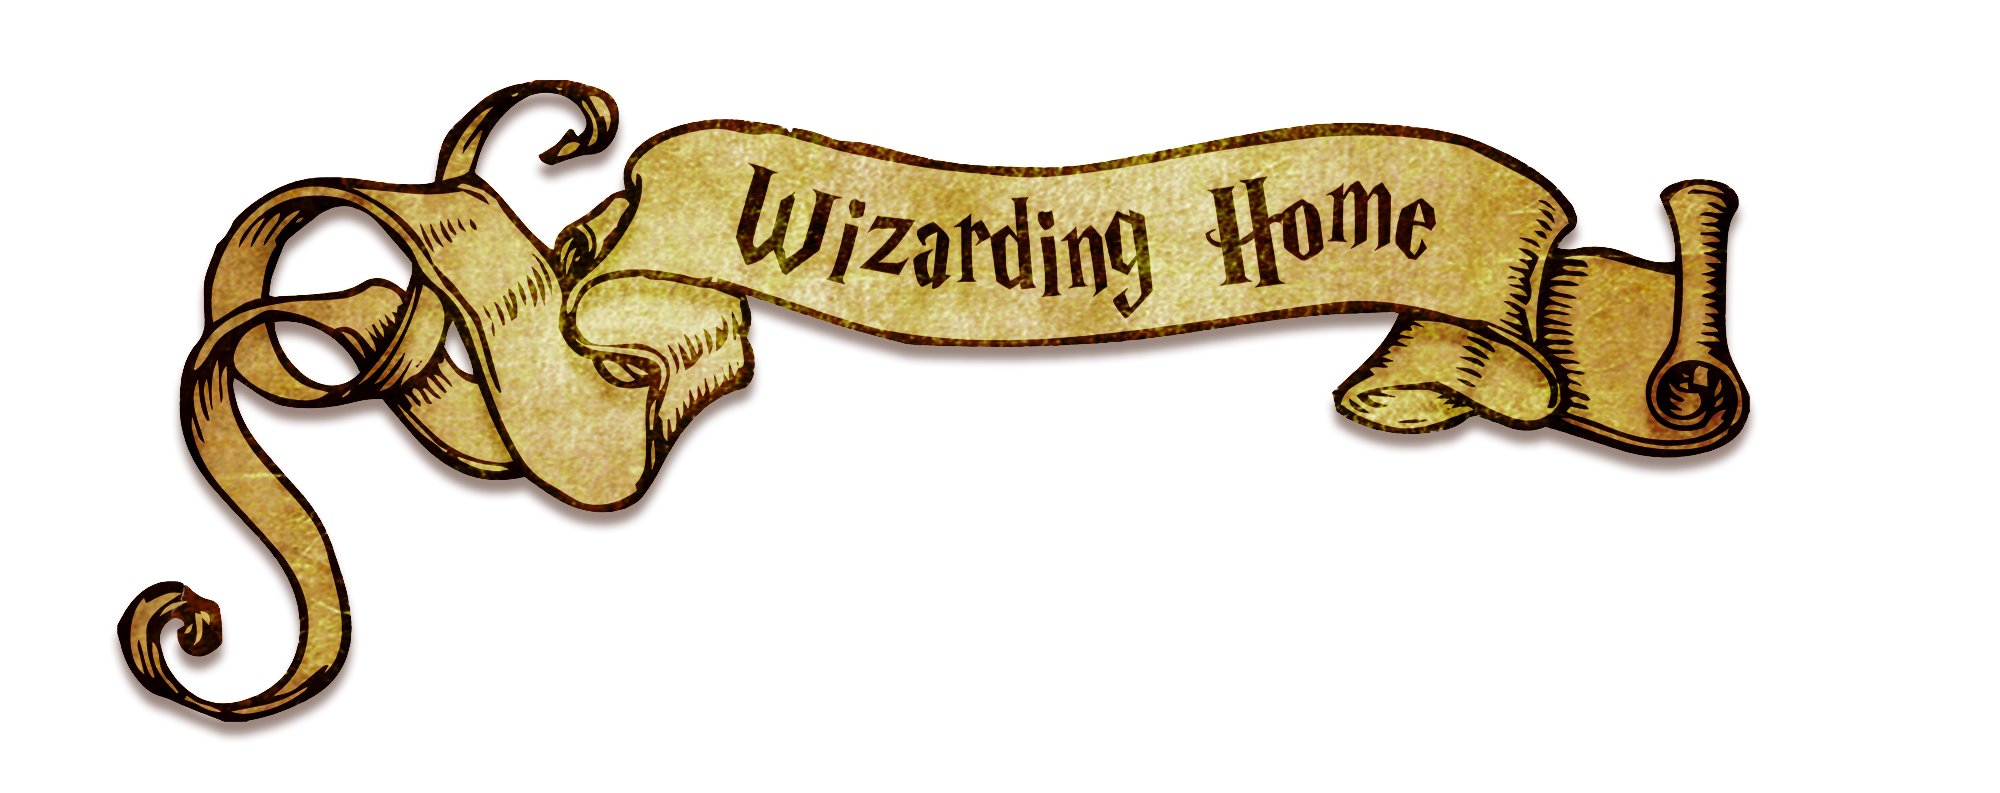 Headmaster's office, Harry Potter Wiki